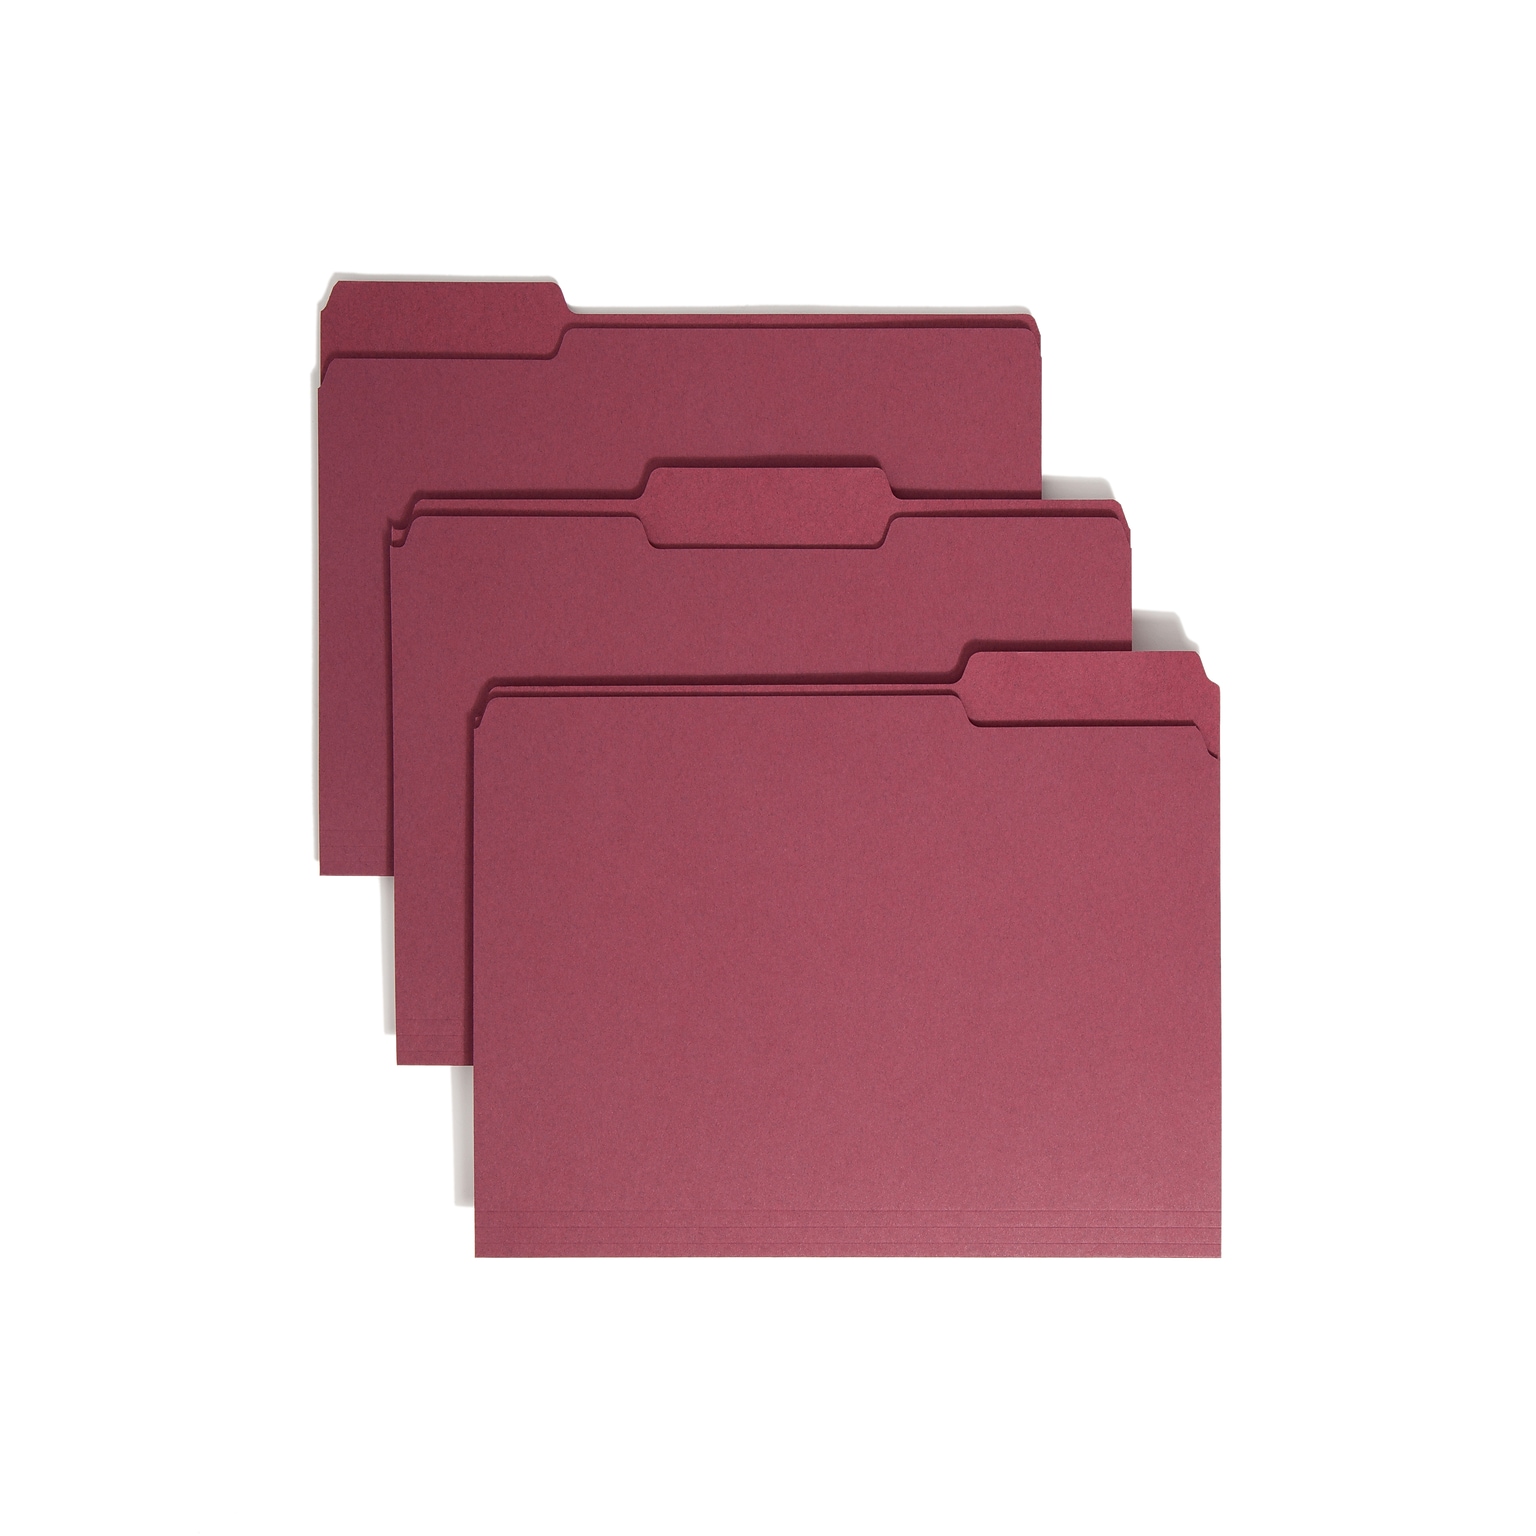 Smead File Folders, 1/3-Cut Tab, Letter Size, Maroon, 100/Box (13093)